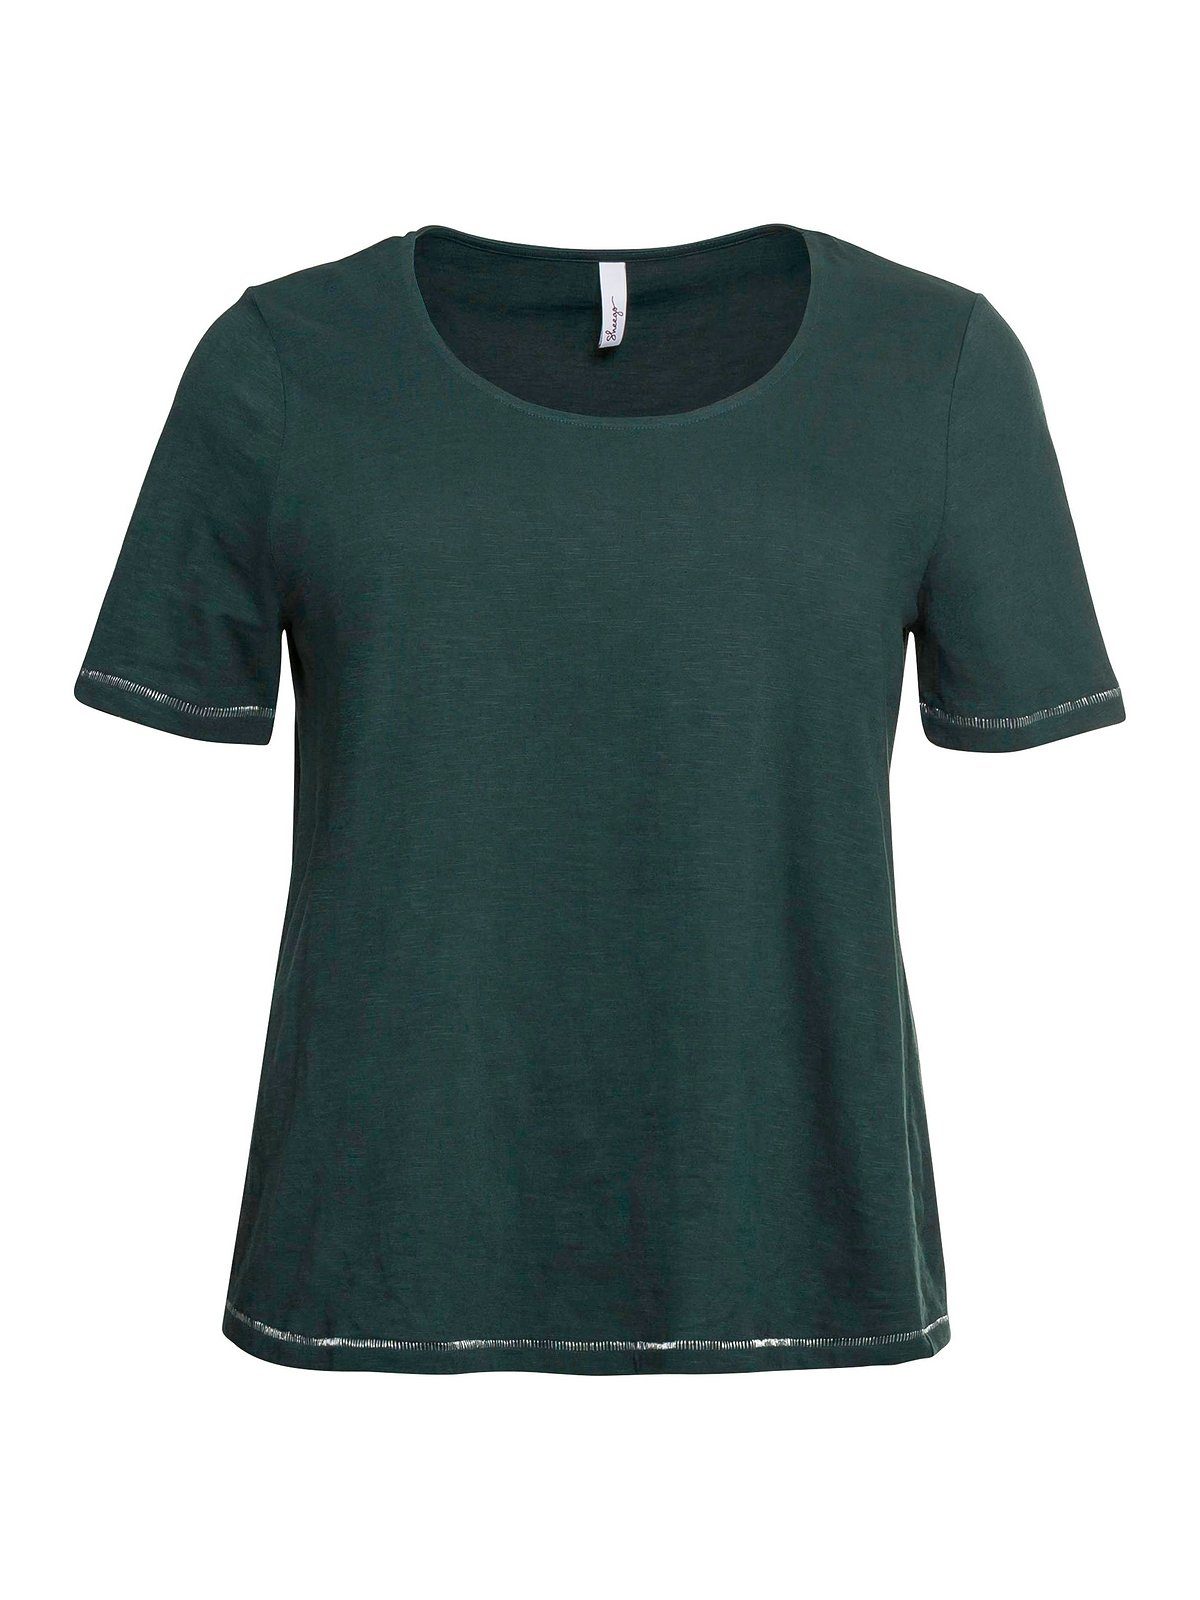 Sheego T-Shirt Große Größen auf tiefgrün mit hinten Print der Schulter